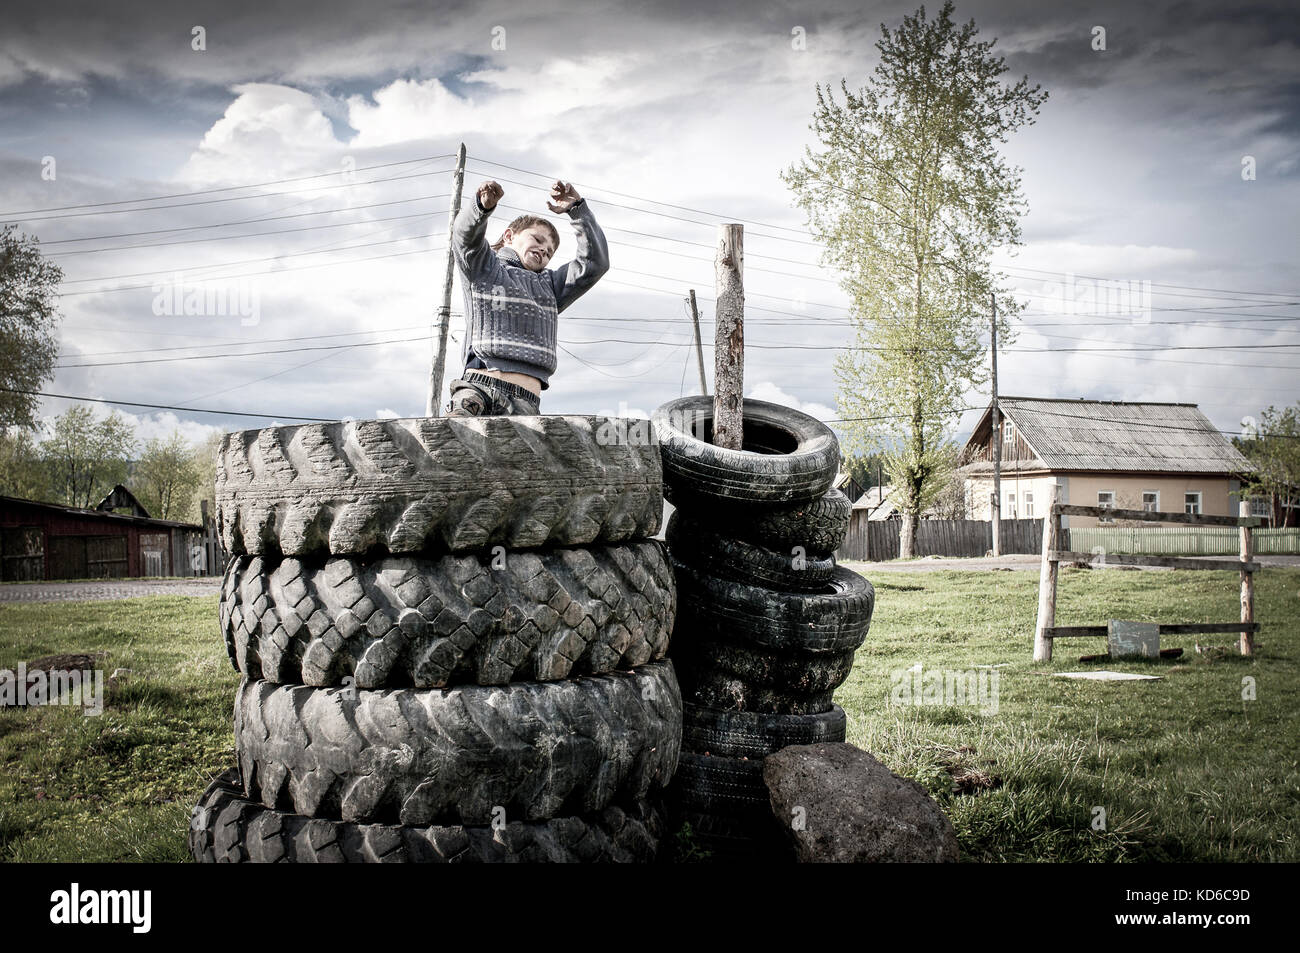 ALEXANDROVSK, RUSSIE - MAI 23 : Un jeune Russe joue dans des pneus servant d'air de jeux devant son habitation le 23 mai 2011 a Alexandrovsk, Russie. Stock Photo